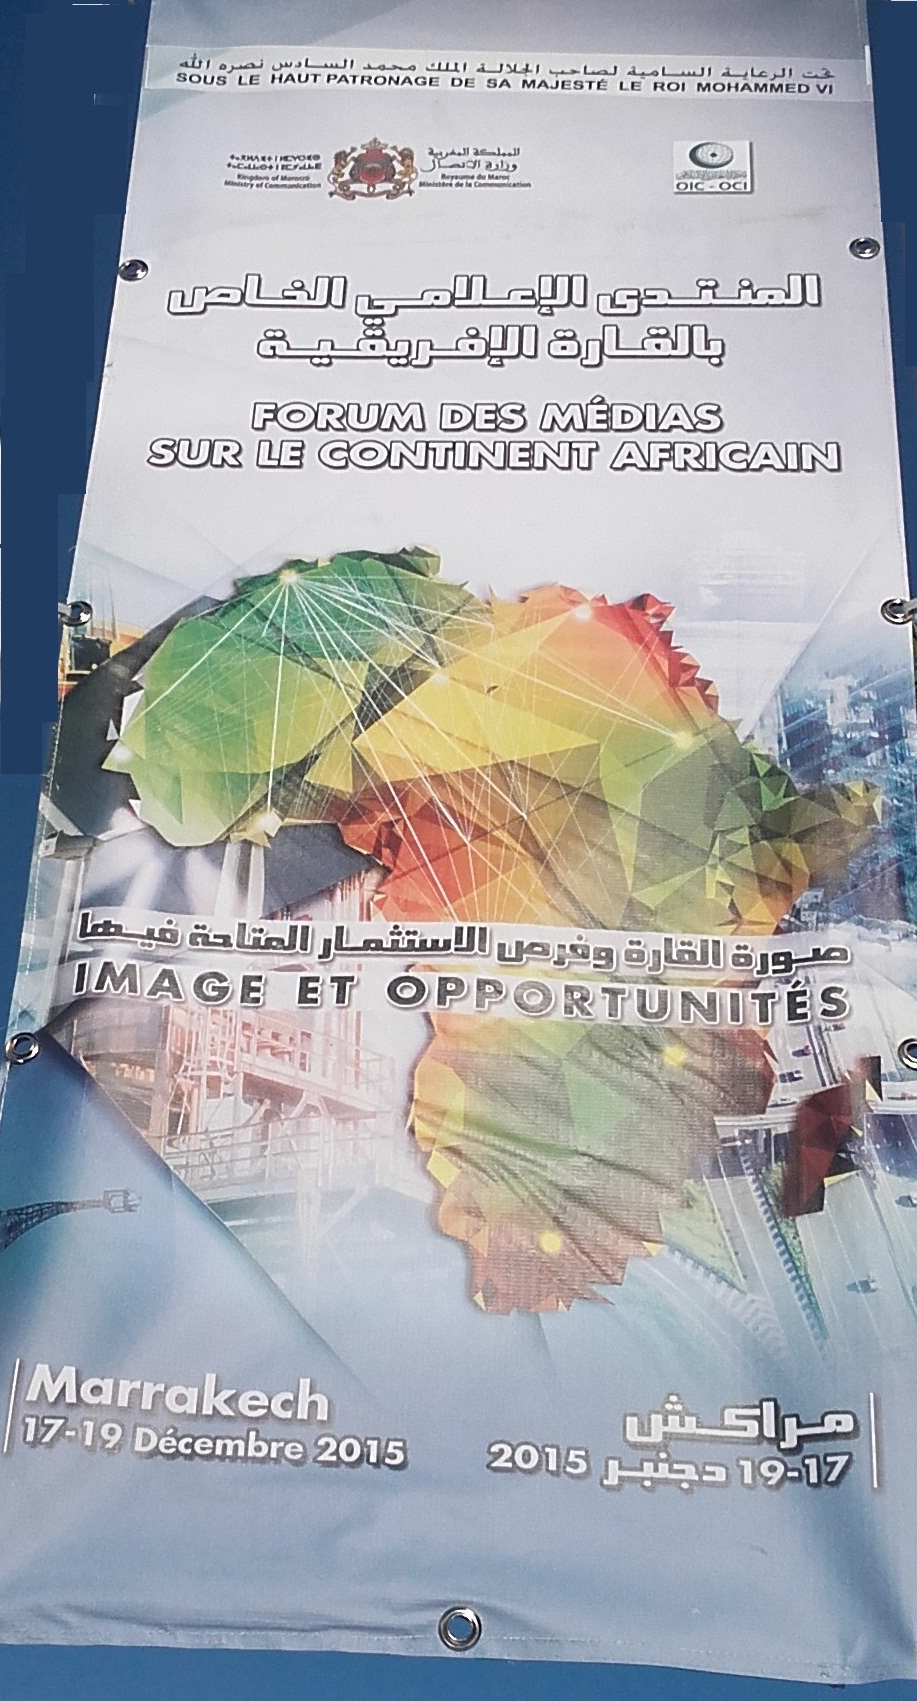 مراكش تحتضن المنتدى الإعلامي الخاص بالقارة الإفريقية : صورة القارة في العالم وفرص الاستثمار المتاحة فيها